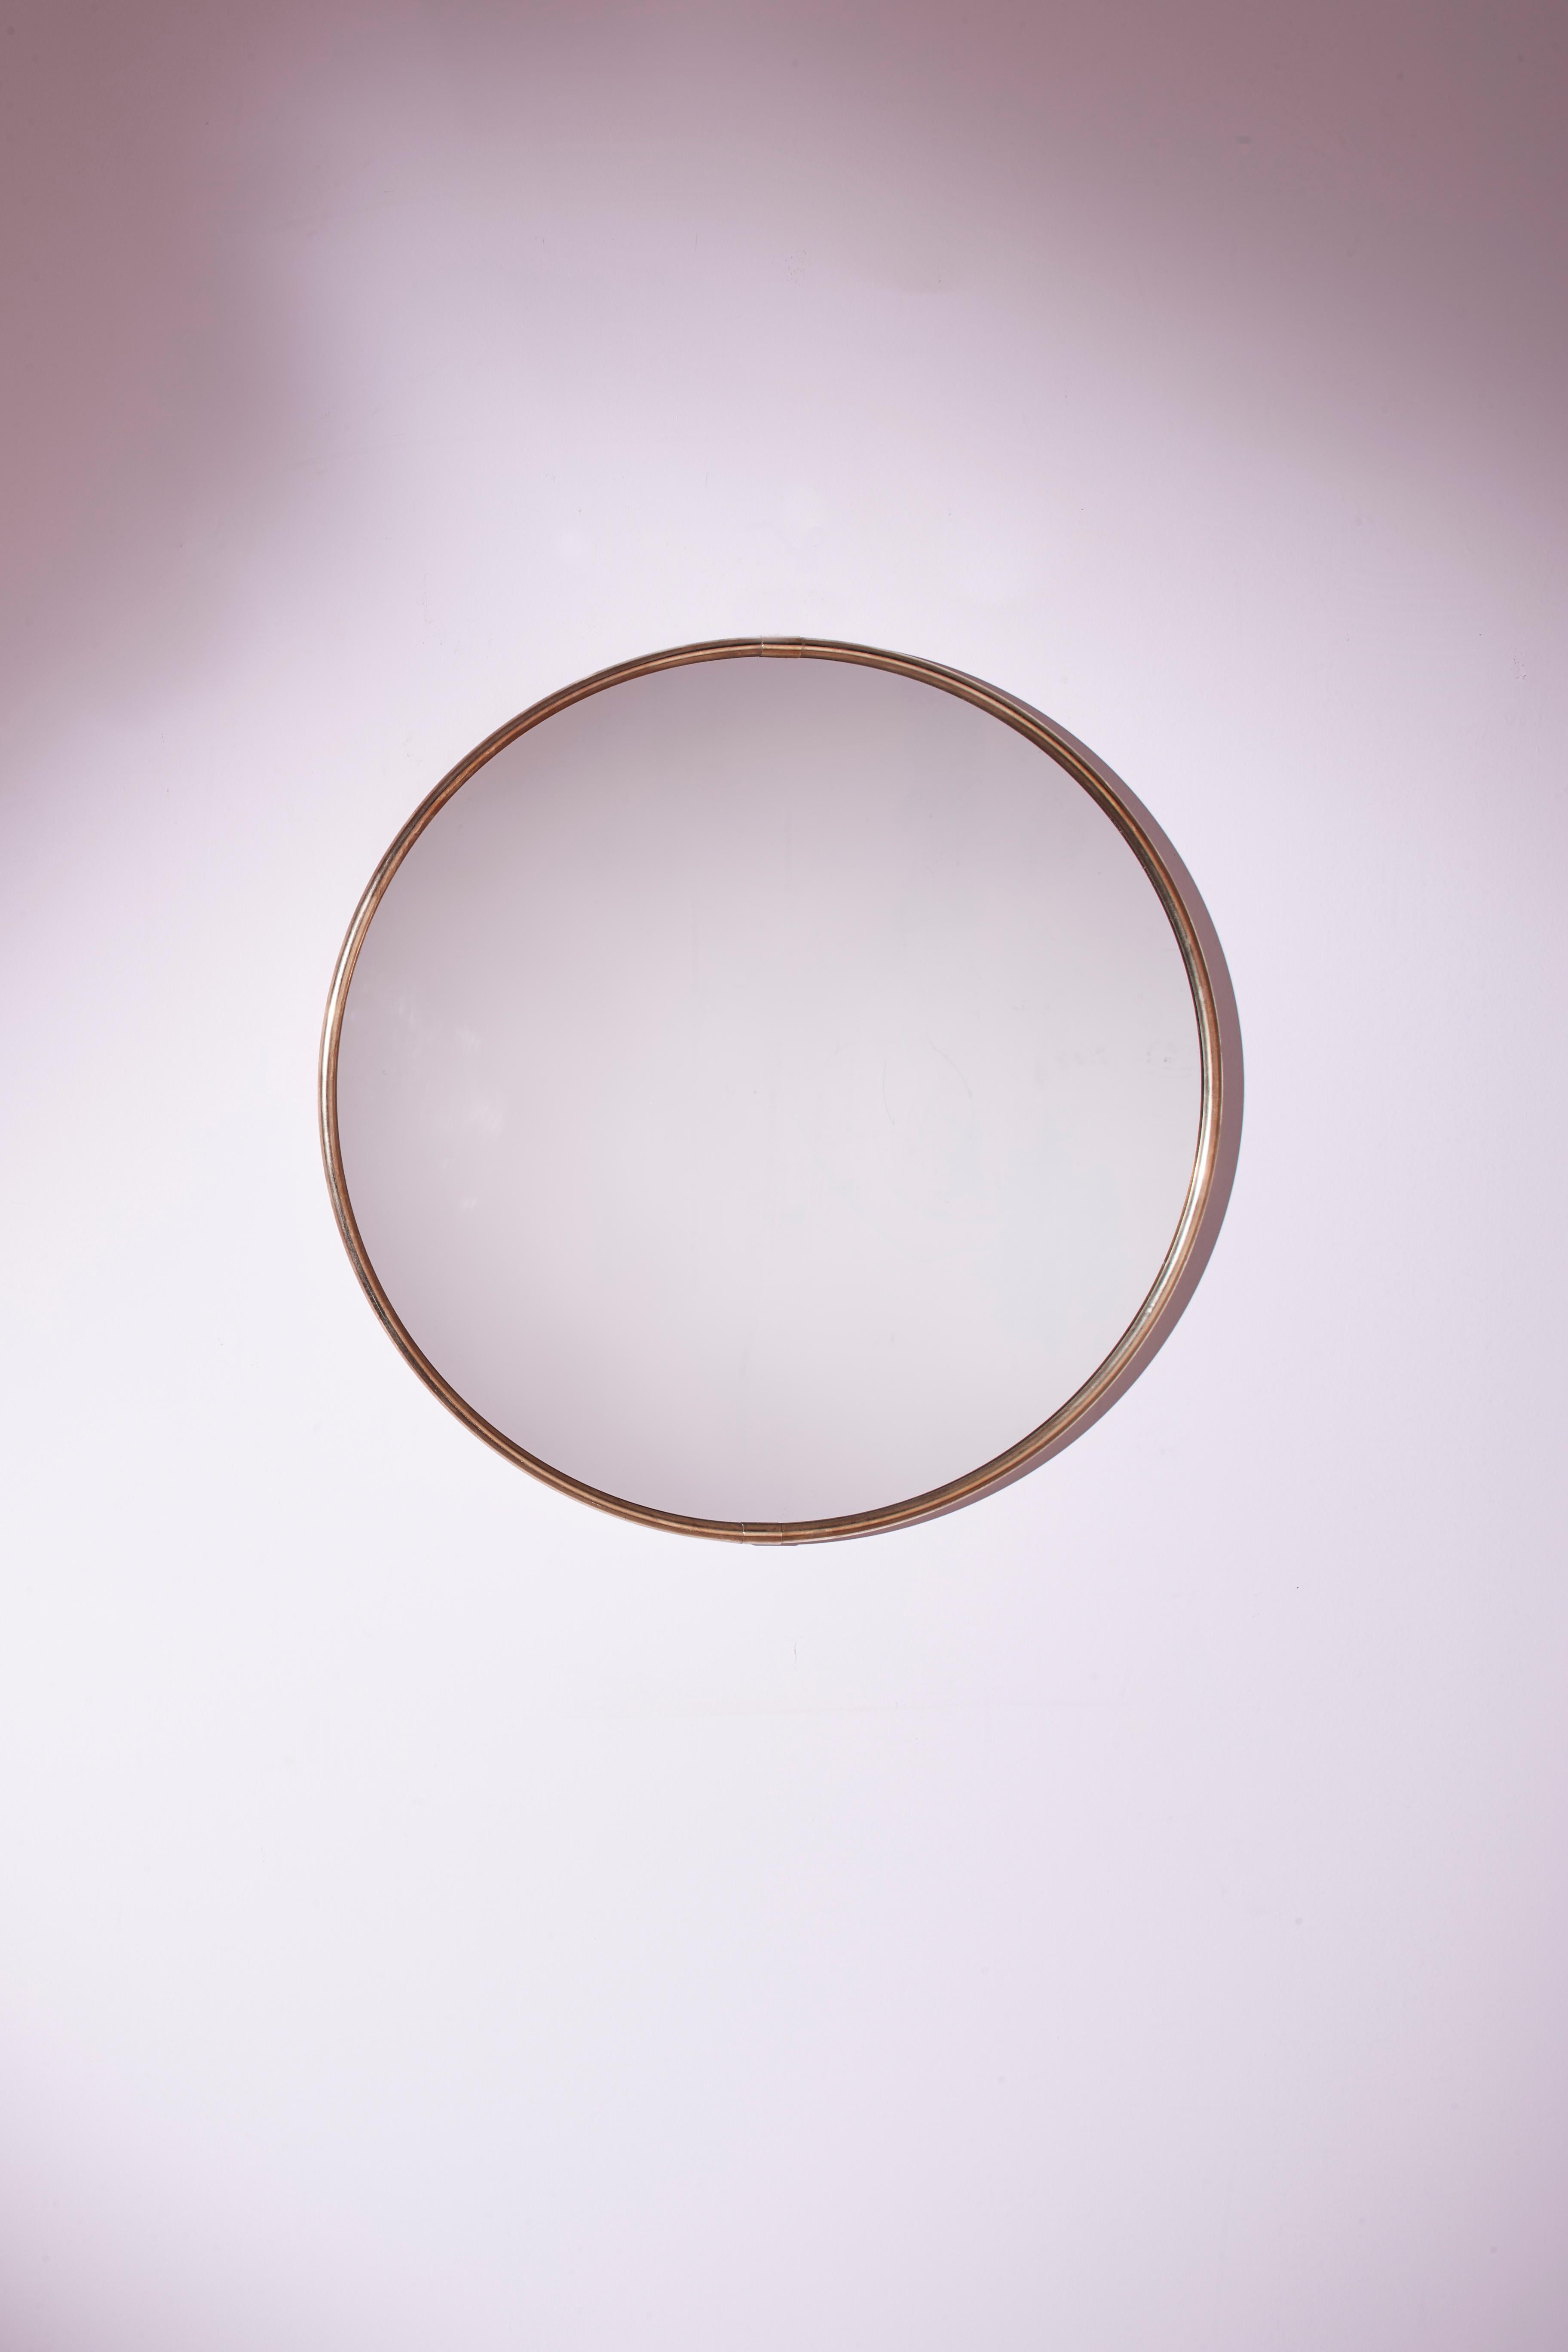 Ein charmanter runder Spiegel italienischer Handwerkskunst aus den siebziger Jahren, der sich durch eine originelle Reflexionsplatte und einen dünnen Messingrahmen auszeichnet.

Dieses raffinierte Möbelstück eignet sich dank seiner optimalen